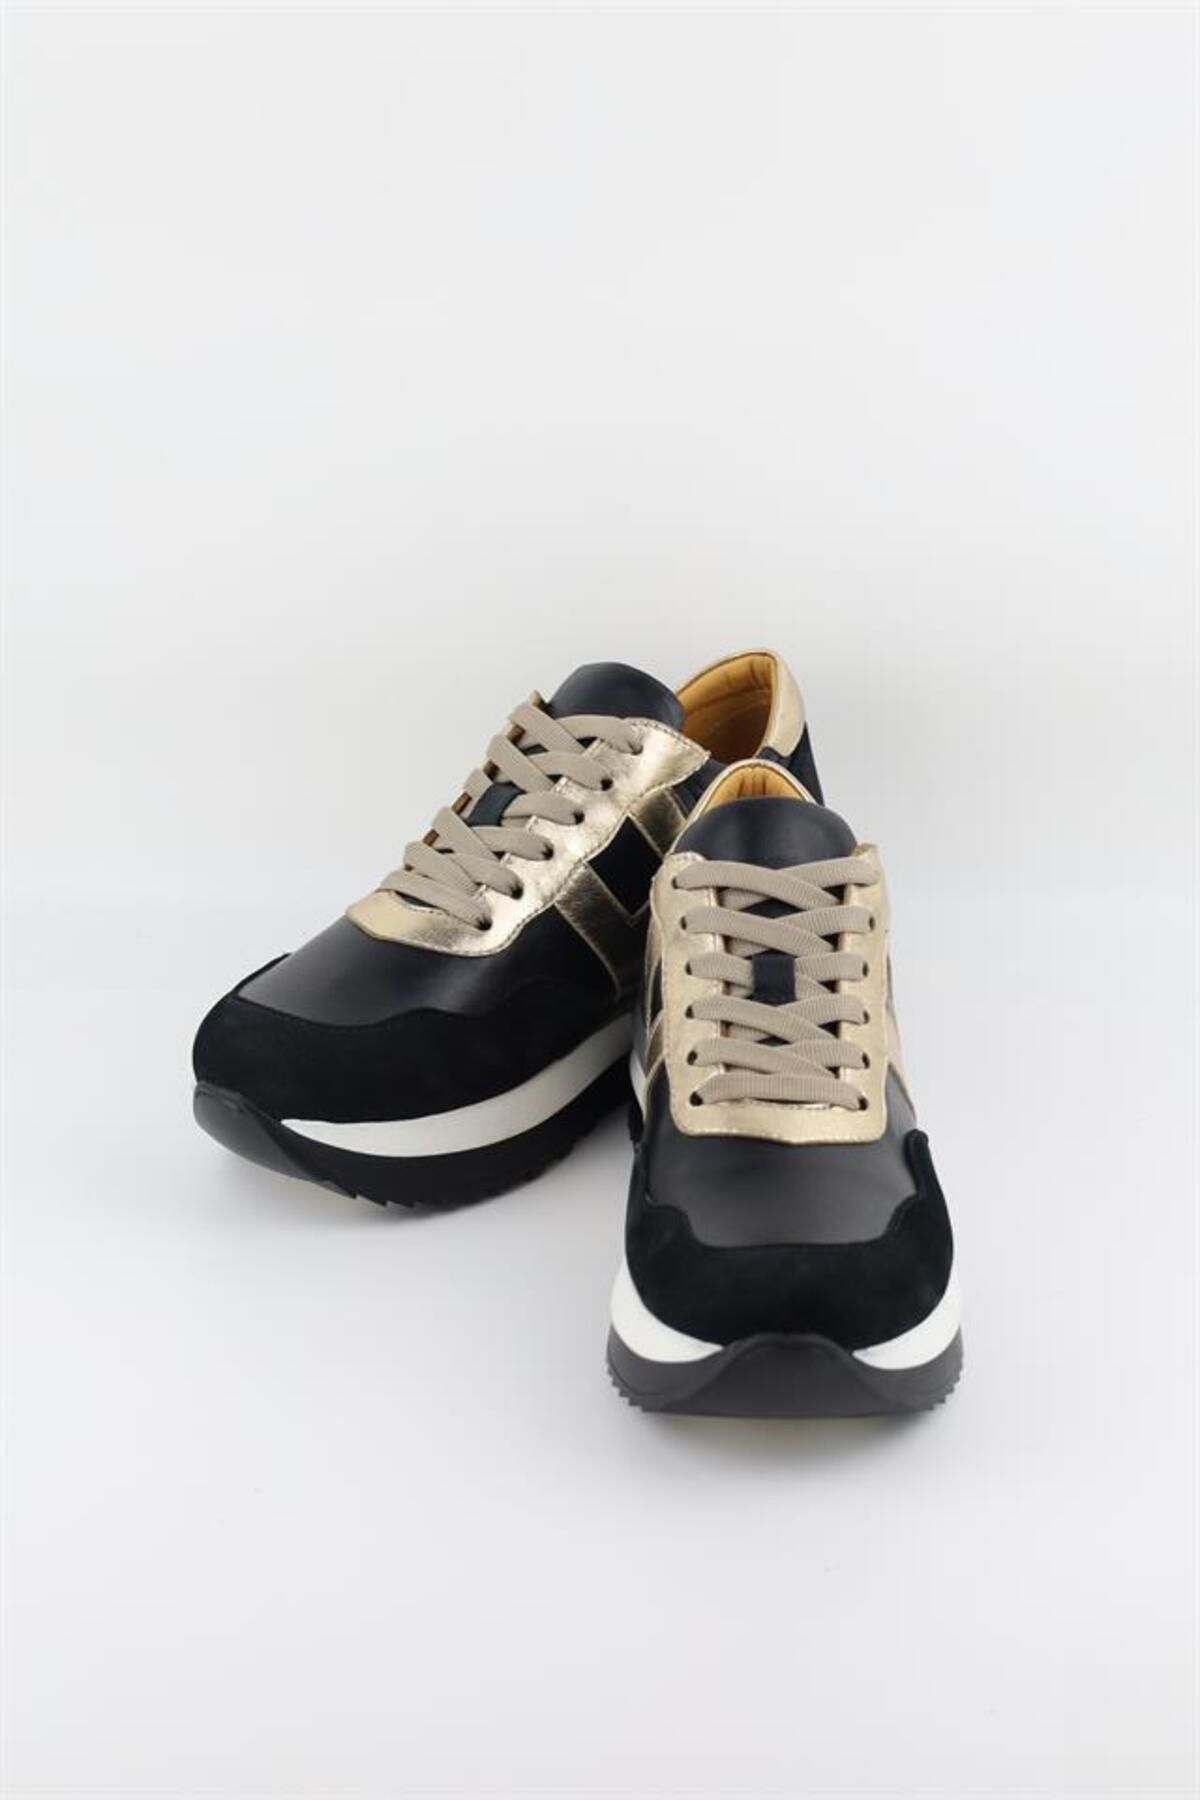 HARRY MANSON Model 209 Hakiki Dana Deri Kadın Günlük Ayakkabı